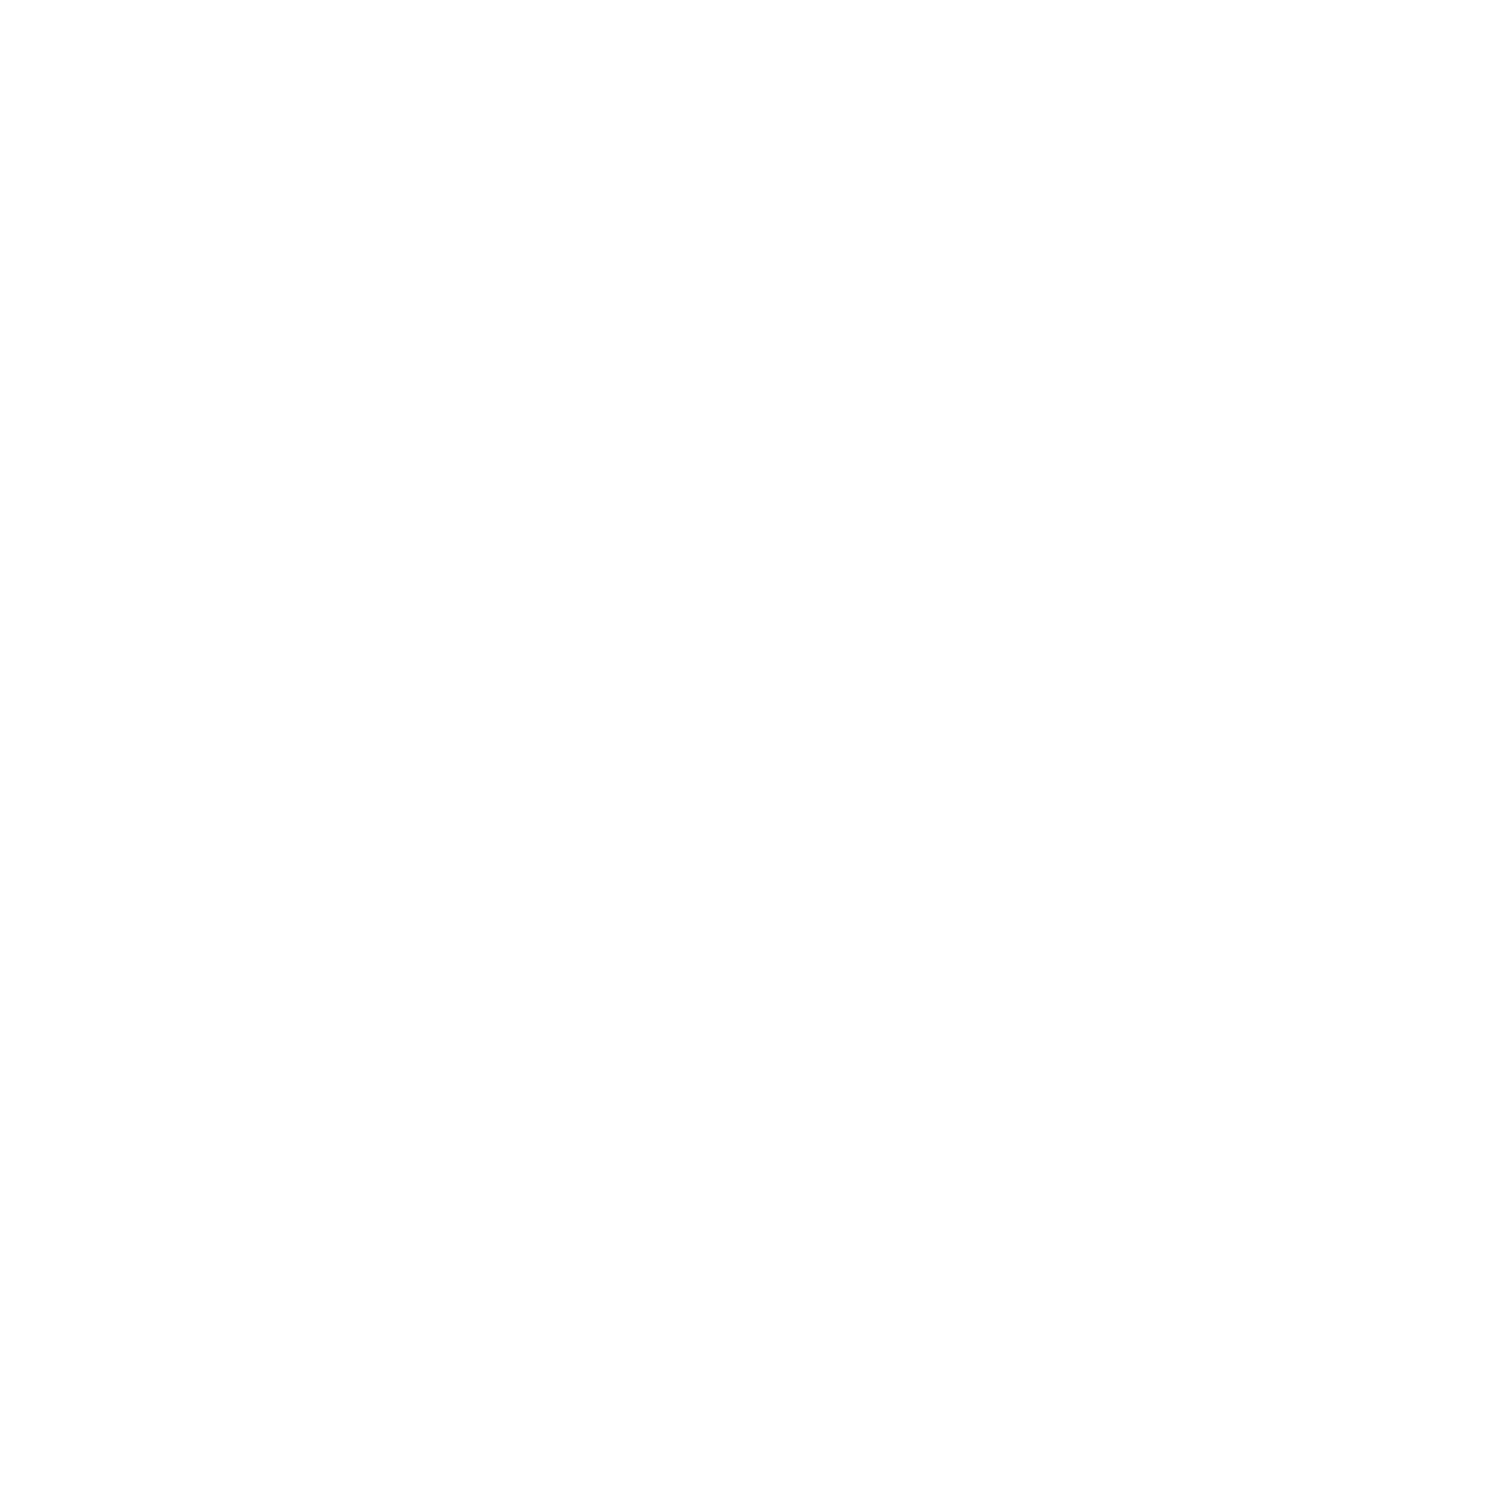 The Cato Collective Company